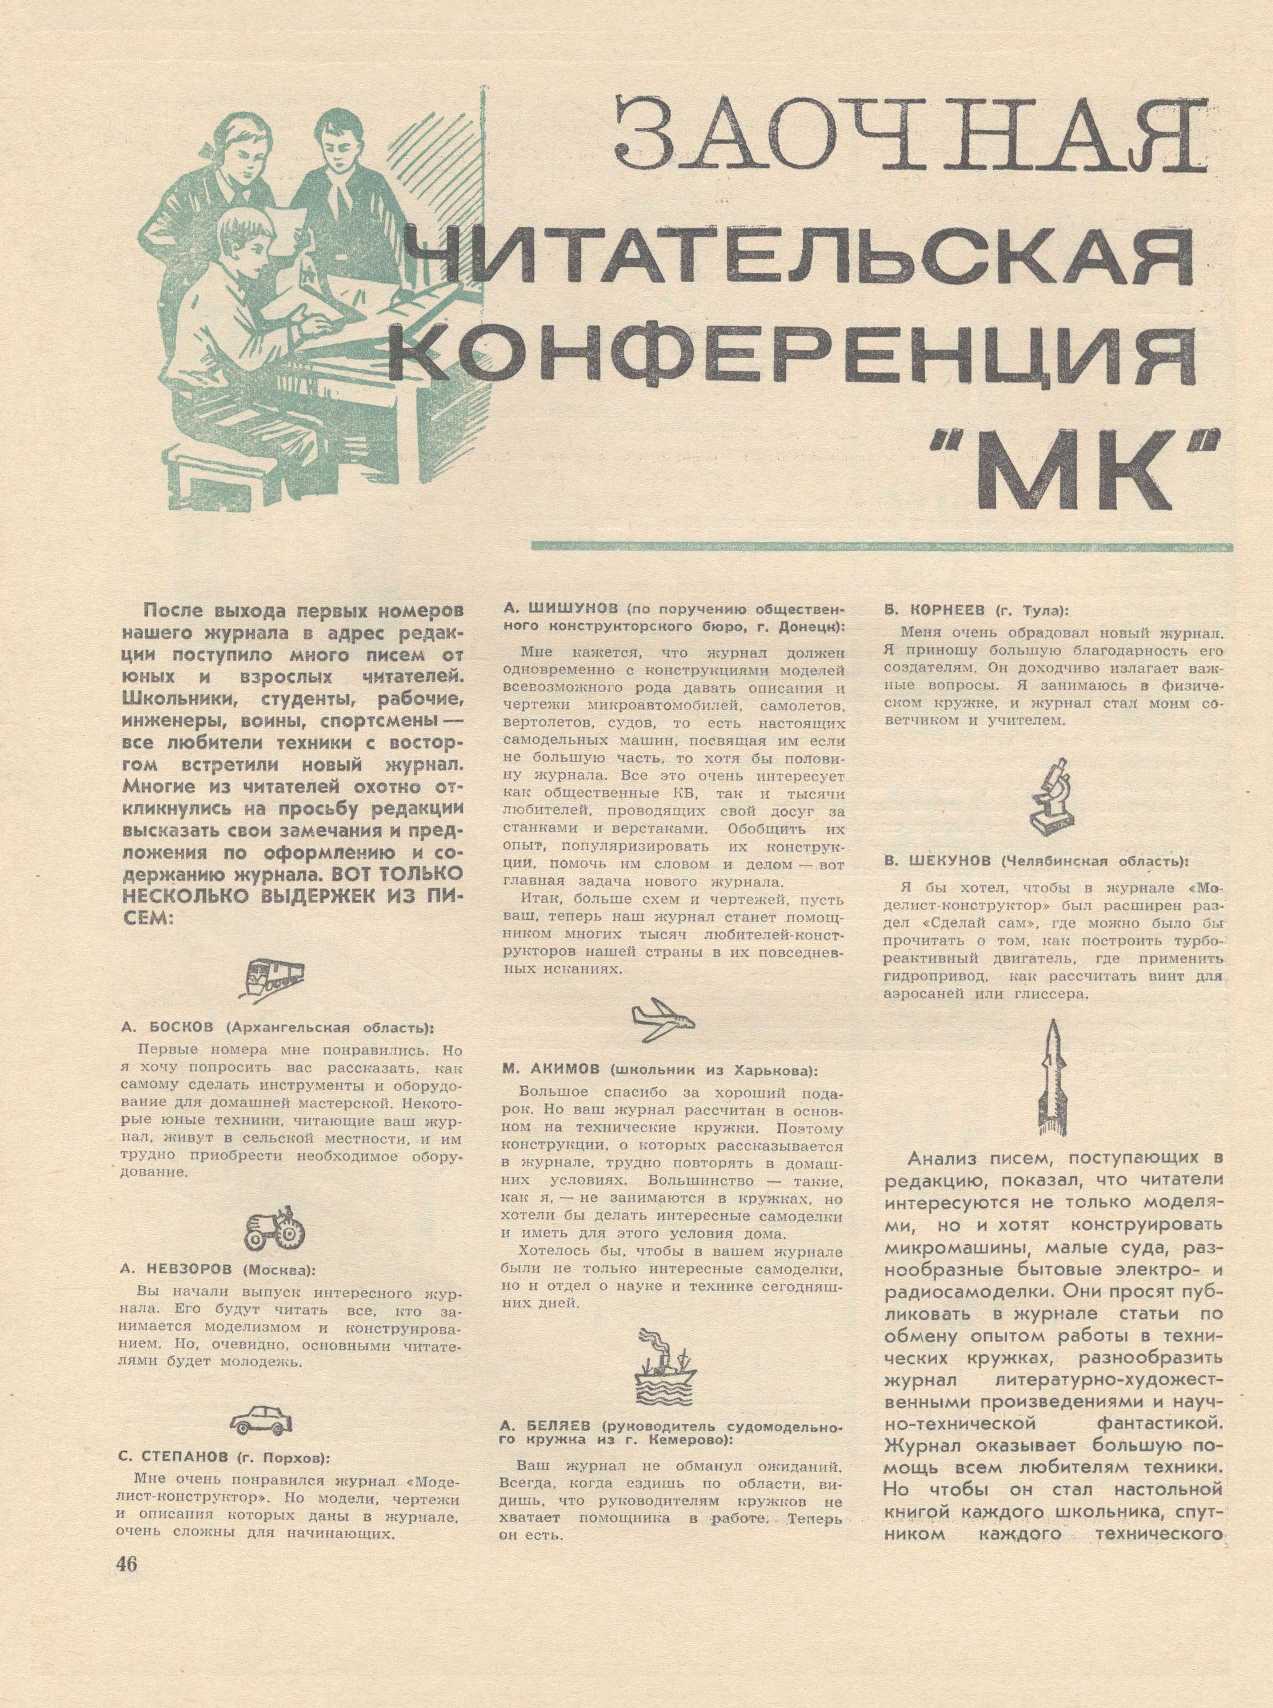 МК 9, 1966, 46 c.